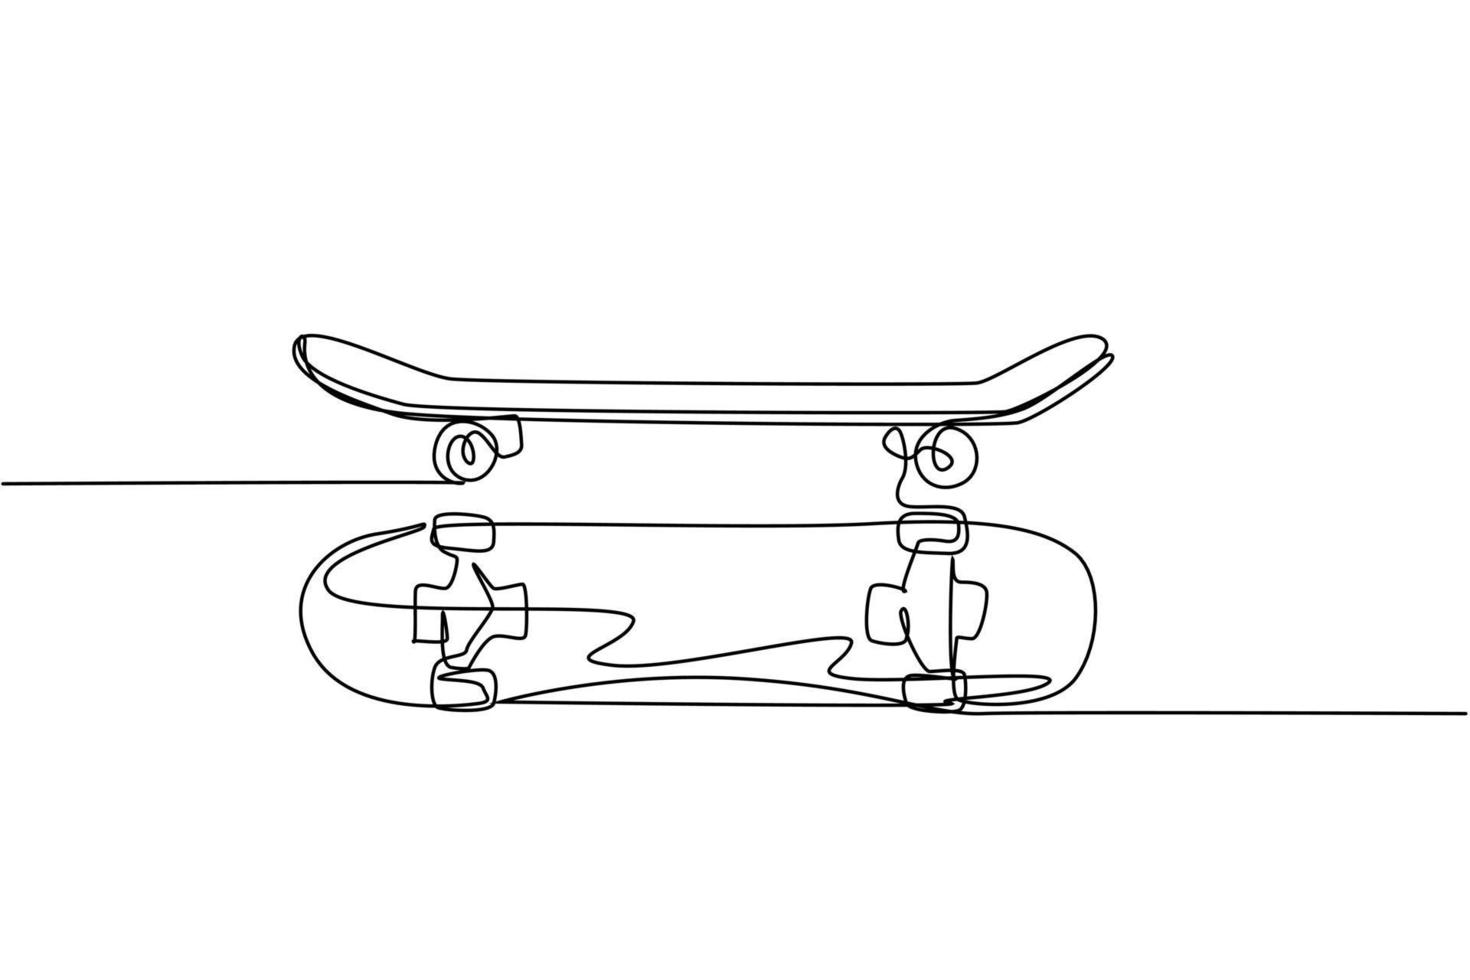 en kontinuerlig linjeteckning av uppsättning gammal retro skateboard, sidovy och ovanifrån. hipster extrem klassisk sport koncept enkel rad grafisk rita design vektor illustration